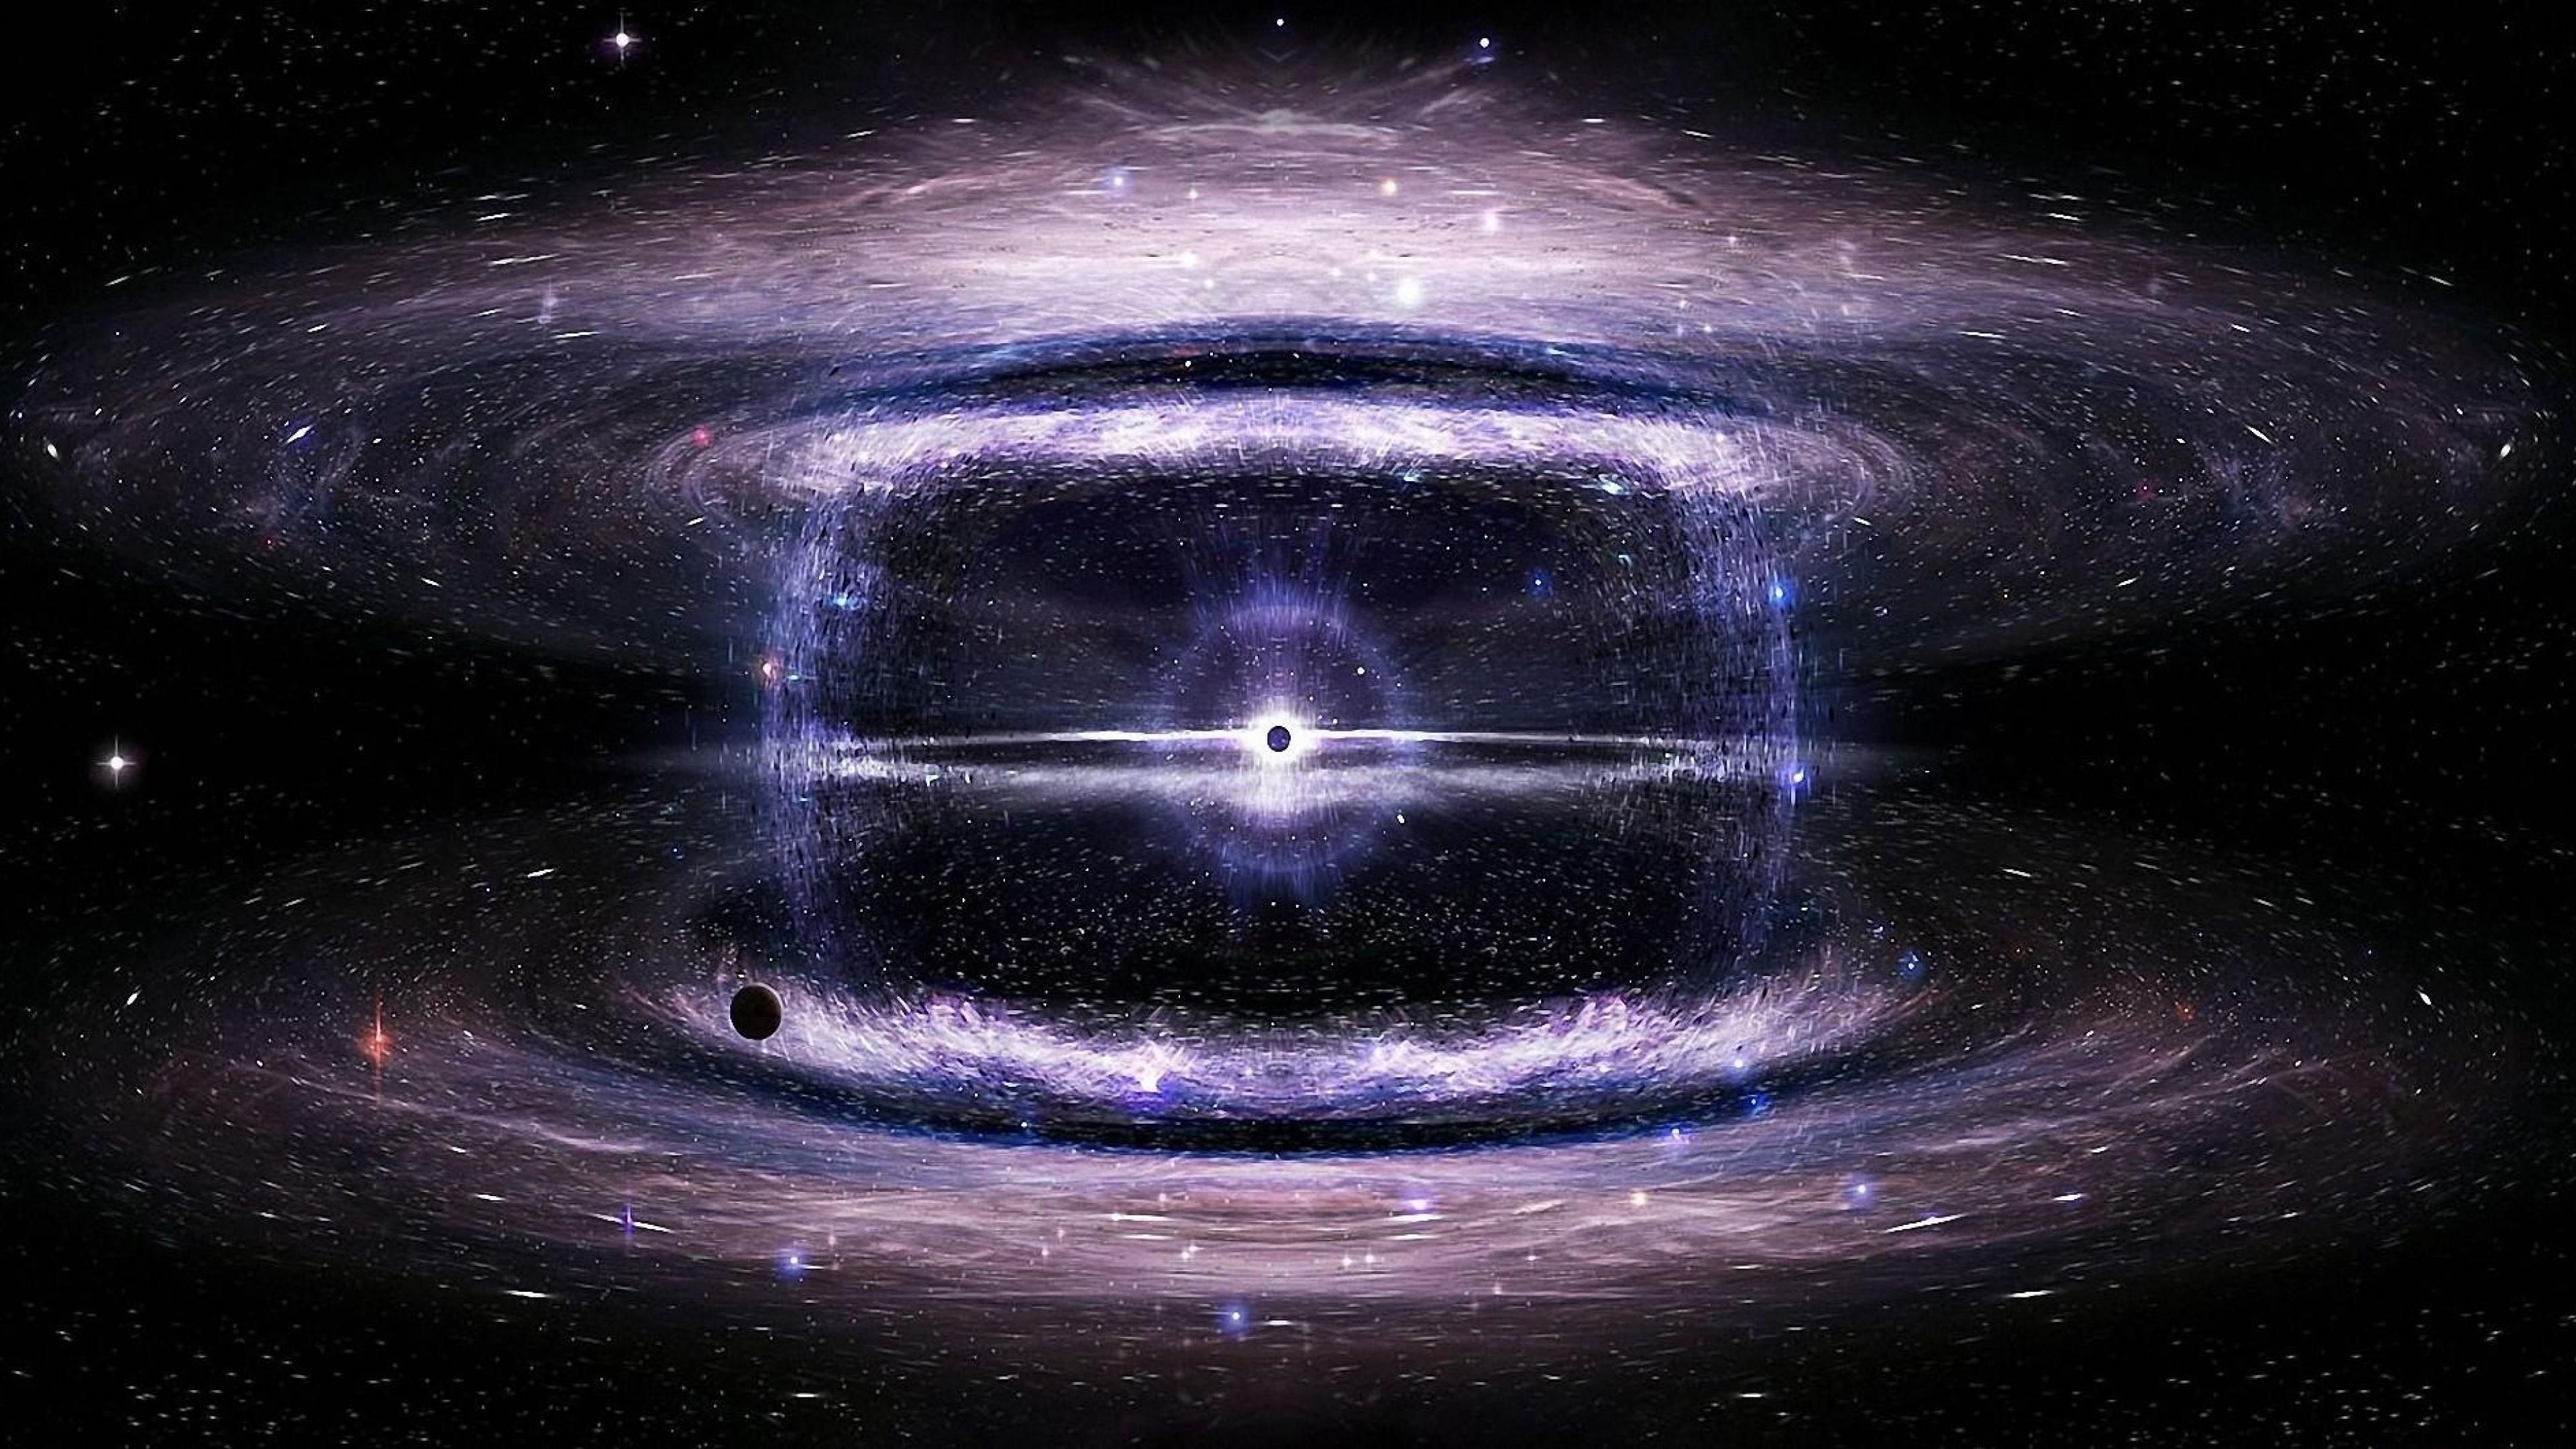 Bạn yêu thích tất cả những gì liên quan đến hố đen và các hiện tượng vũ trụ khác? Hãy khám phá bức ảnh về hố đen nổi tiếng và đầy huyền bí của chúng tôi. Hình nền vũ trụ của chúng tôi sẽ khiến cho bạn bị cuốn hút vào thế giới đầy bí ẩn của hố đen.